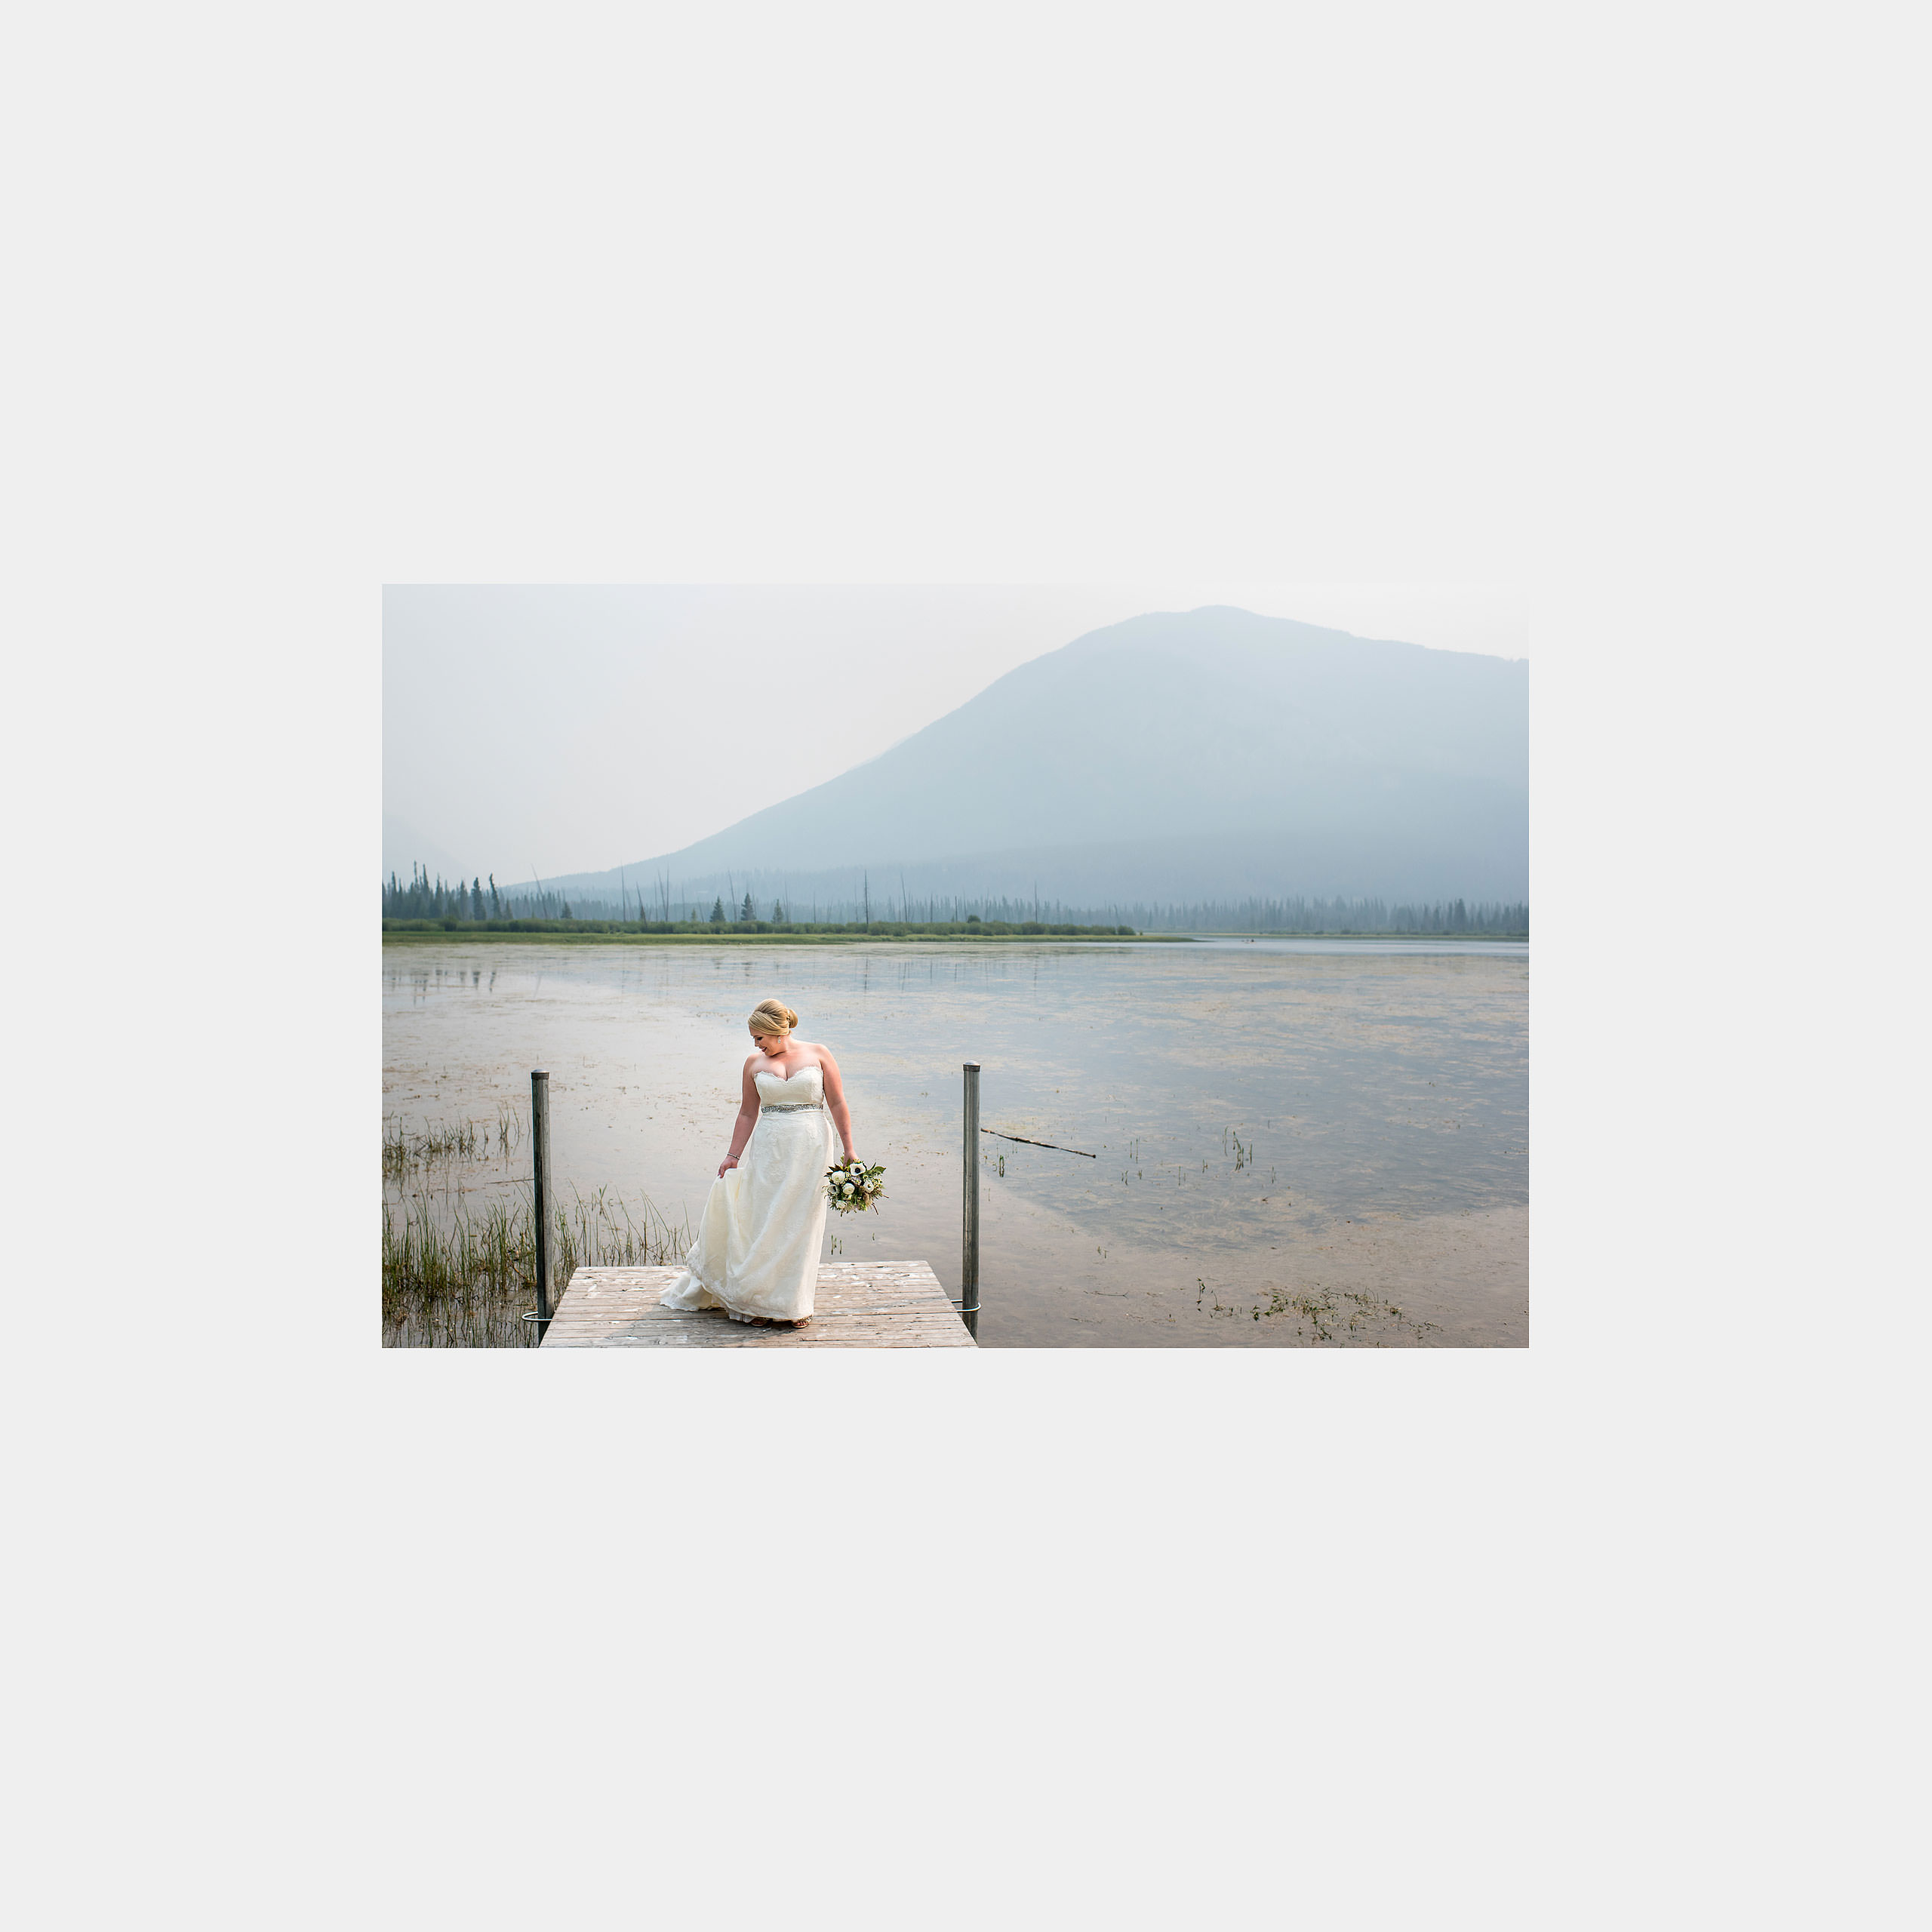 heirloom wedding album by Banff photographer sean leblanc